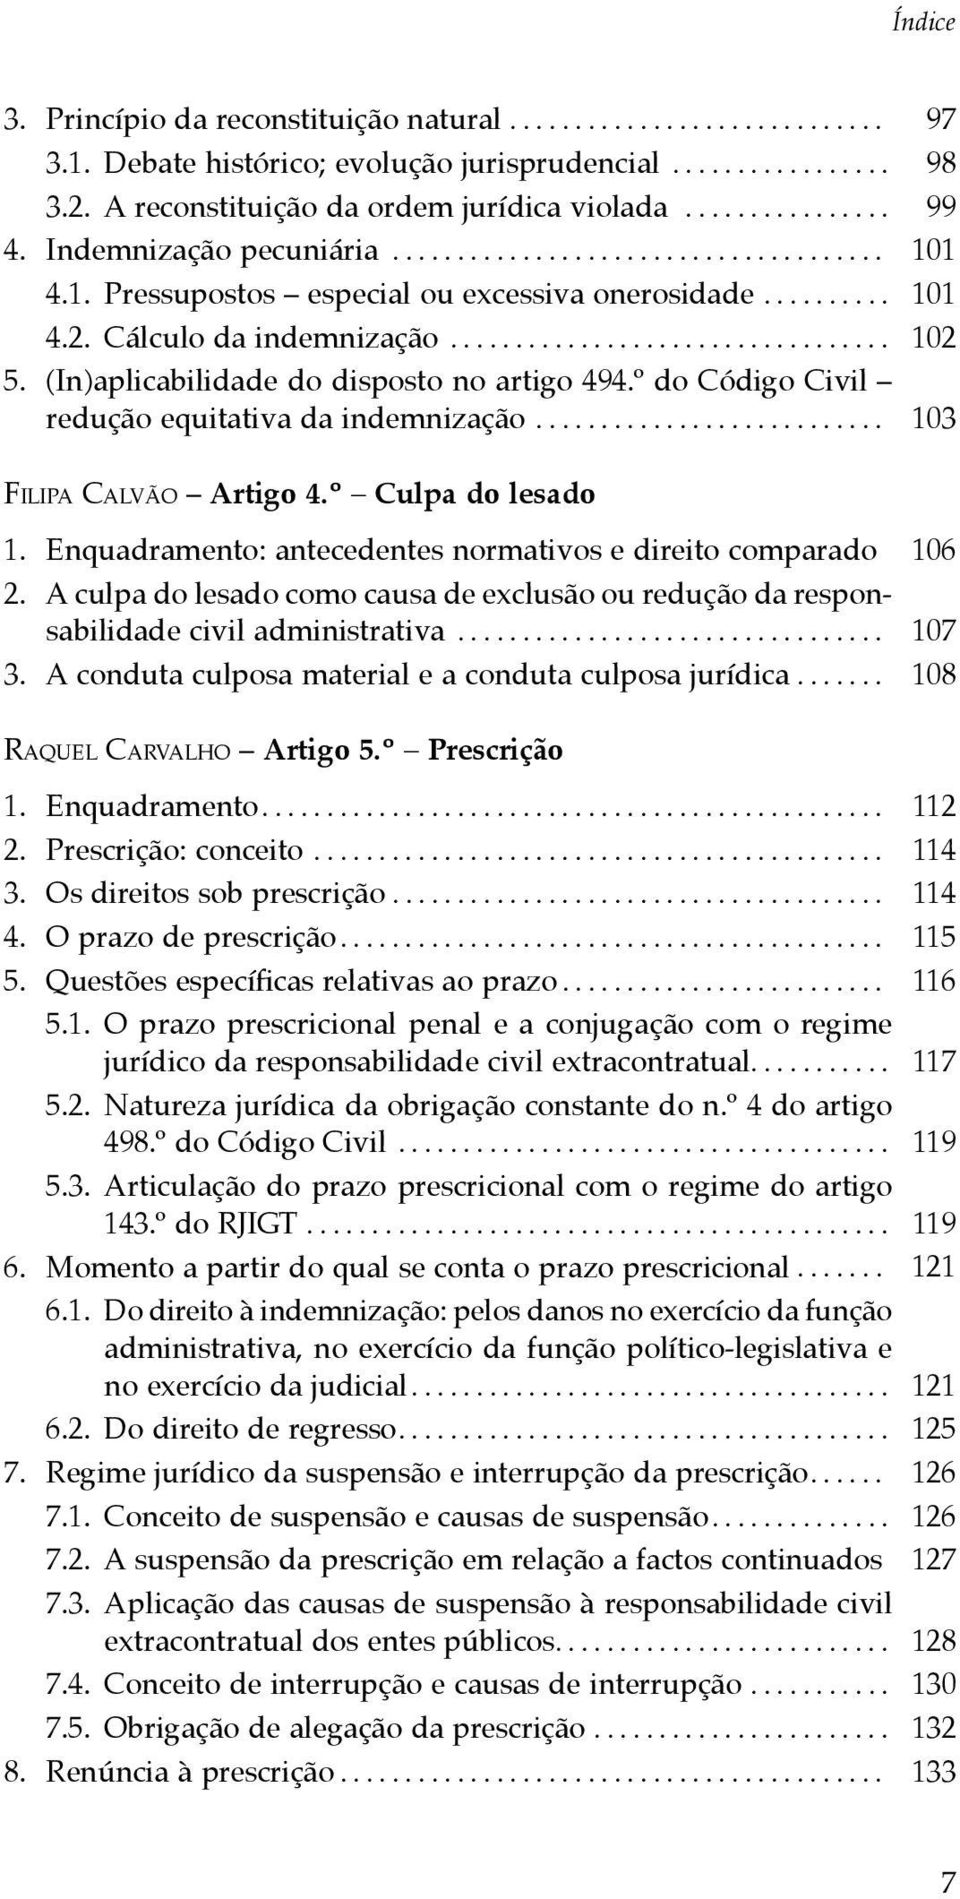 (In)aplicabilidade do disposto no artigo 494.º do Código Civil redução equitativa da indemnização........................... 103 Filipa Calvão Artigo 4.º Culpa do lesado 1.